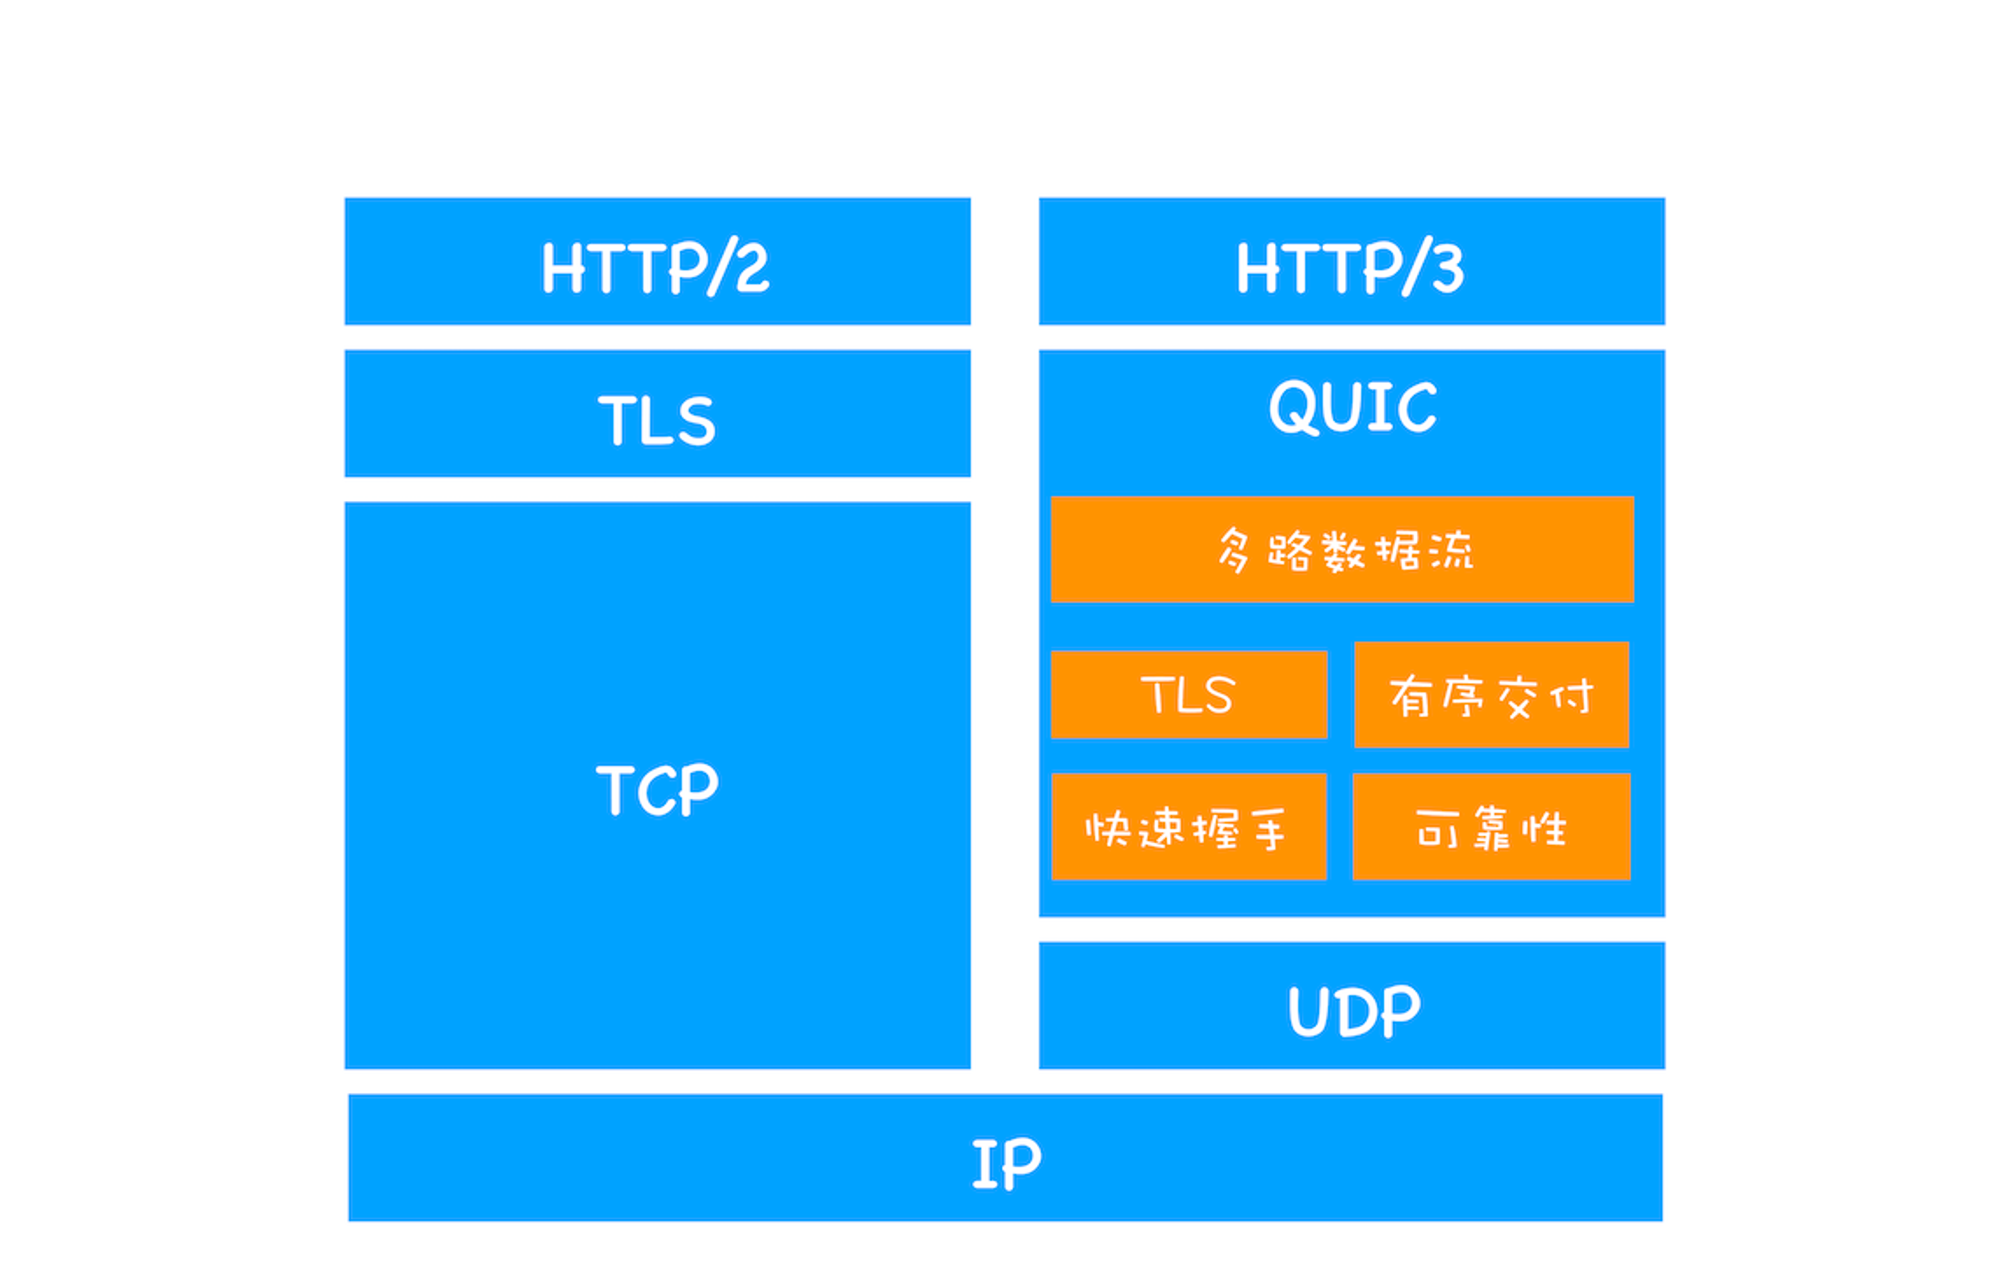 HTTP/2 和 HTTP/3 协议栈